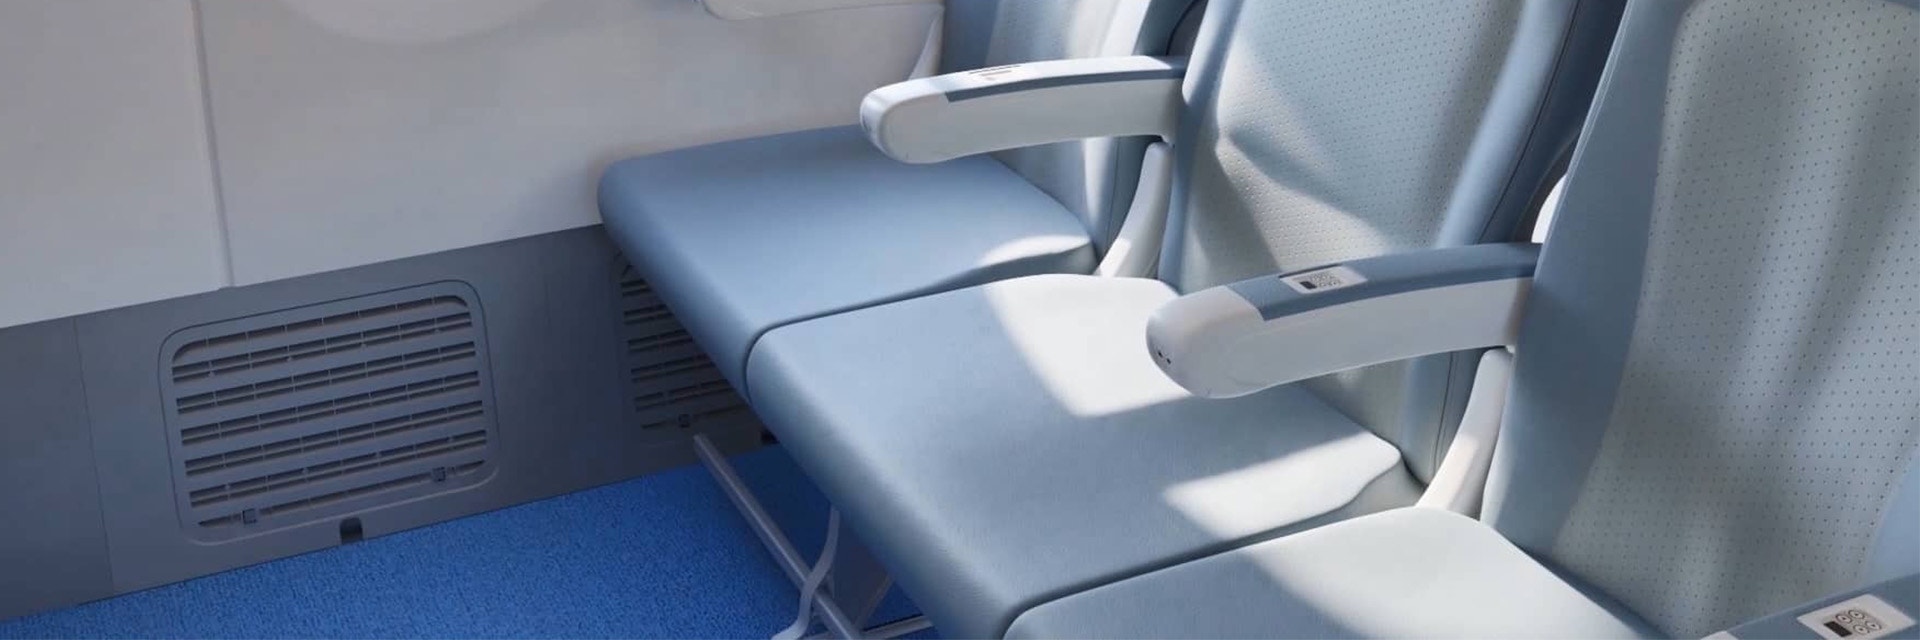 Dreierreihe von Sitzen in einem Flugzeug mit sichtbarem Sockel an der Seitenwand